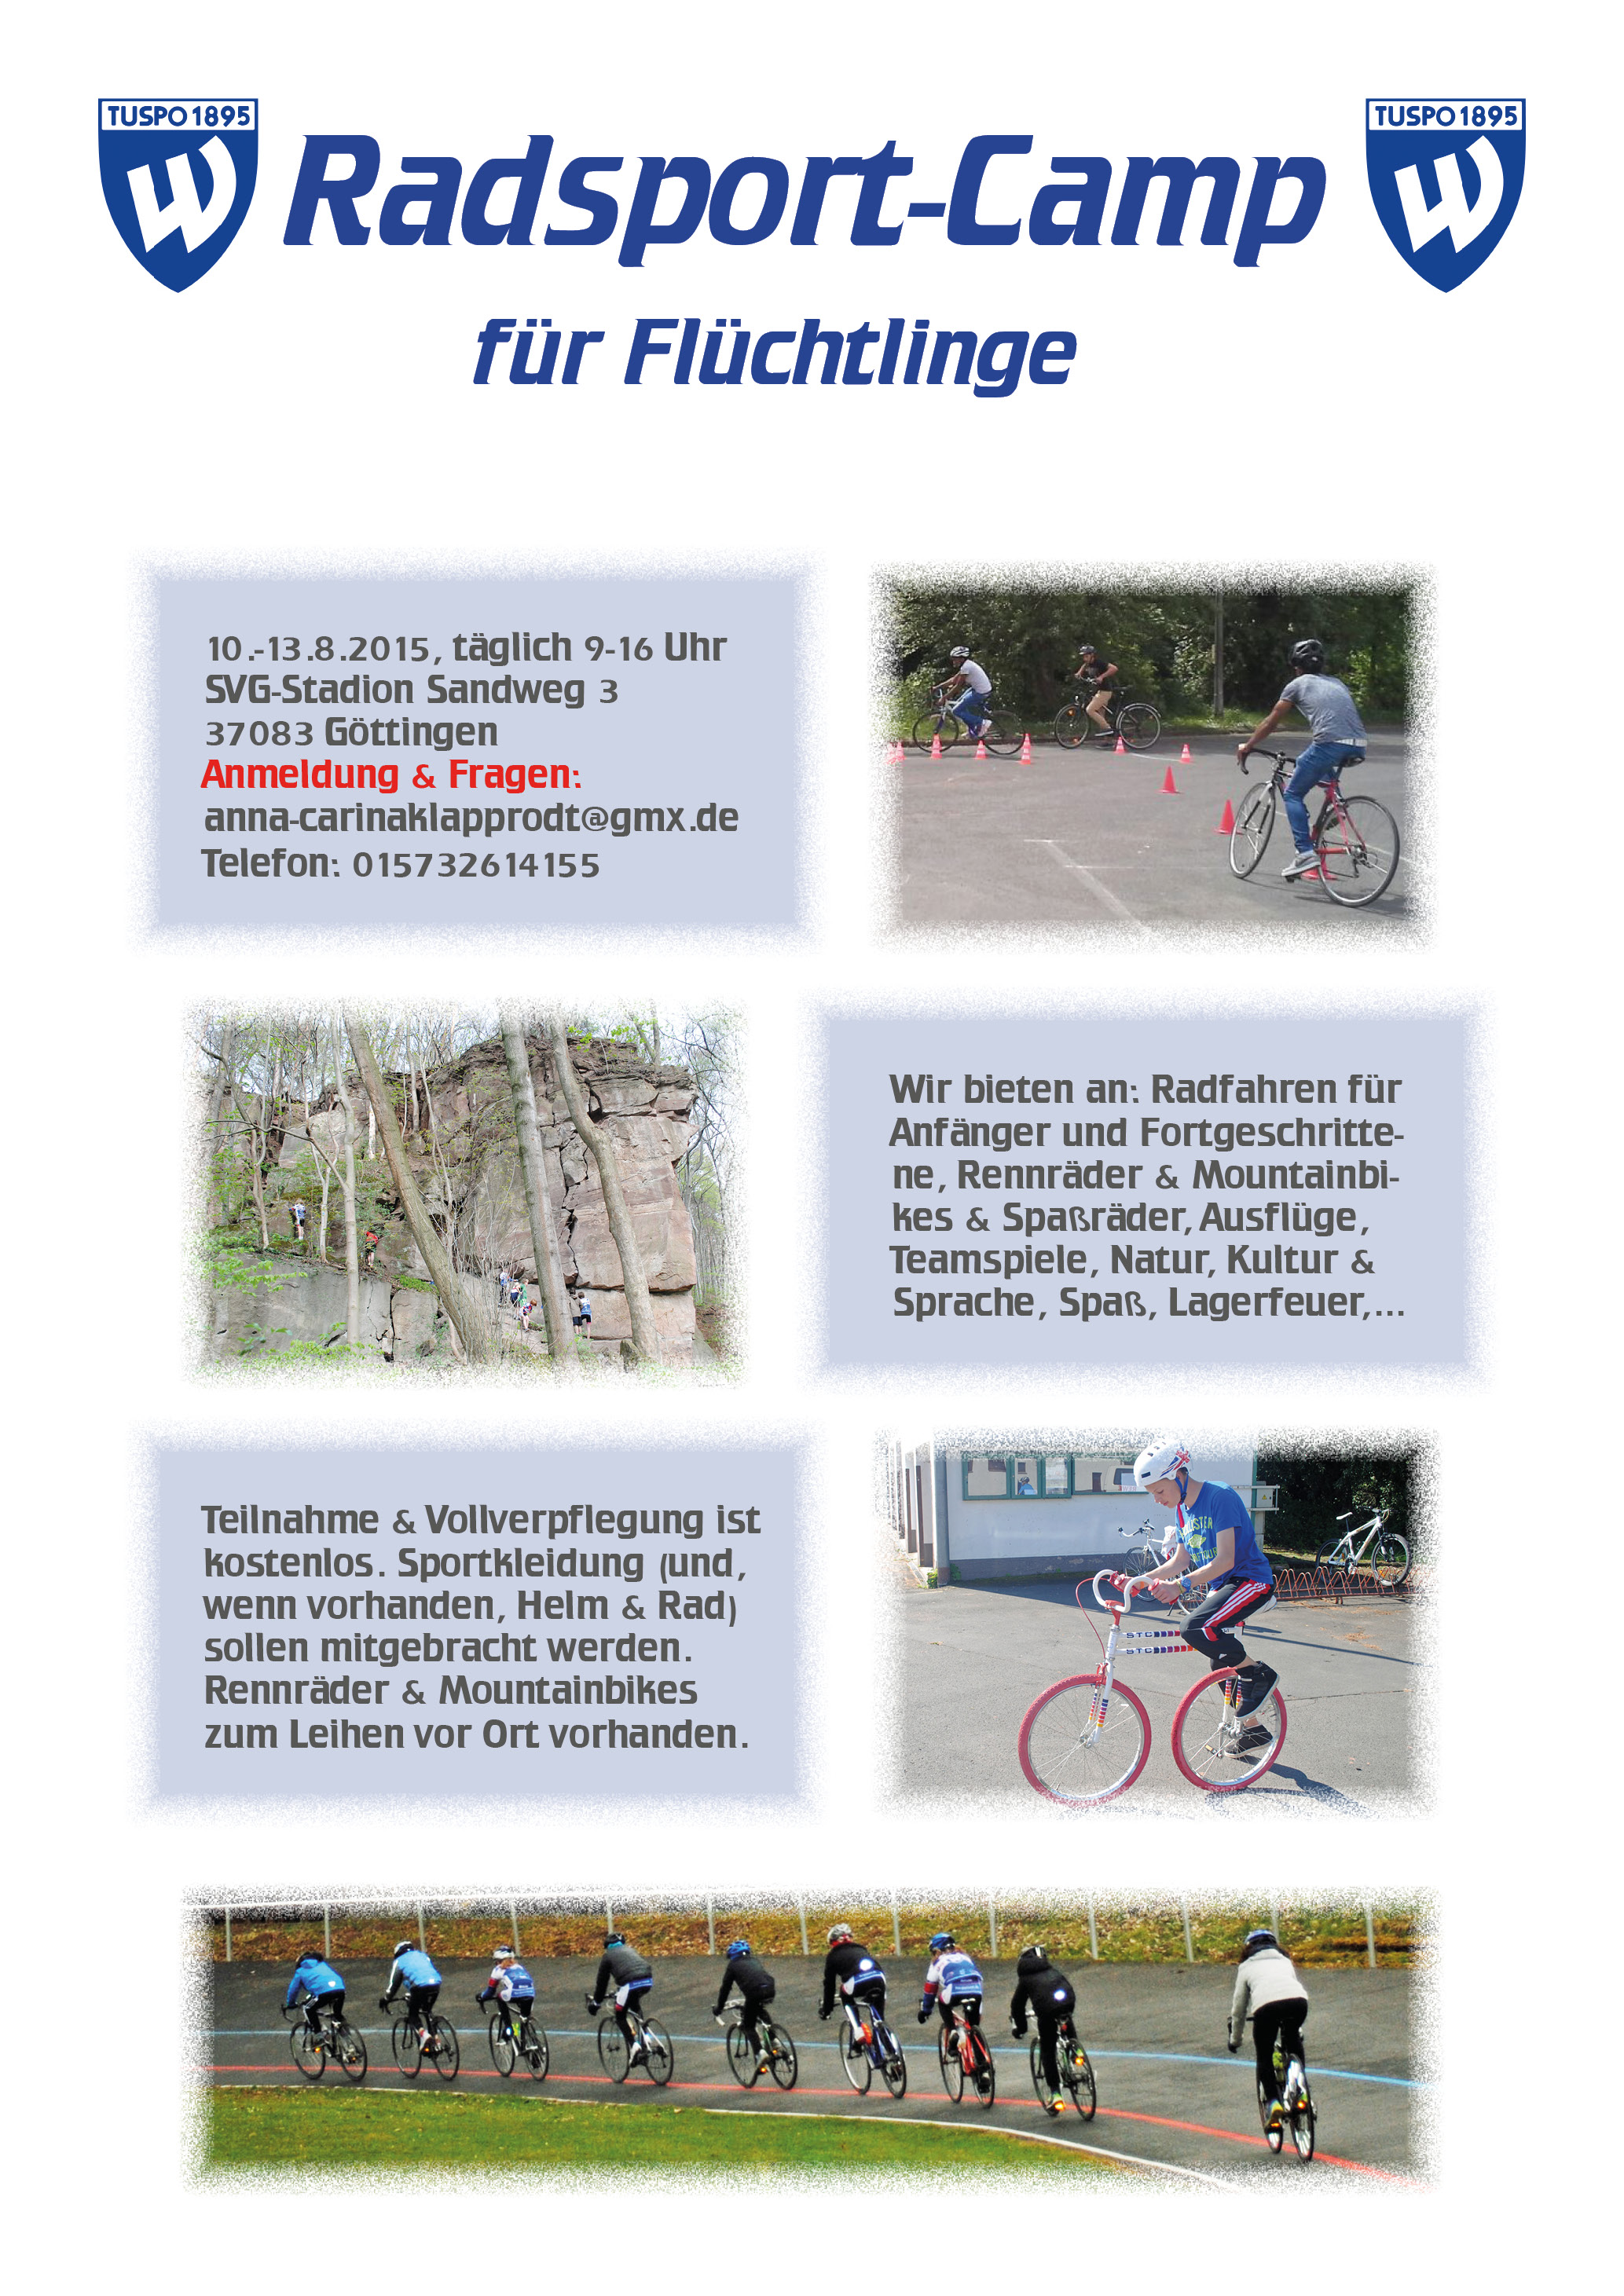 Radsportcamp für Flüchtlinge 2015, deutsch